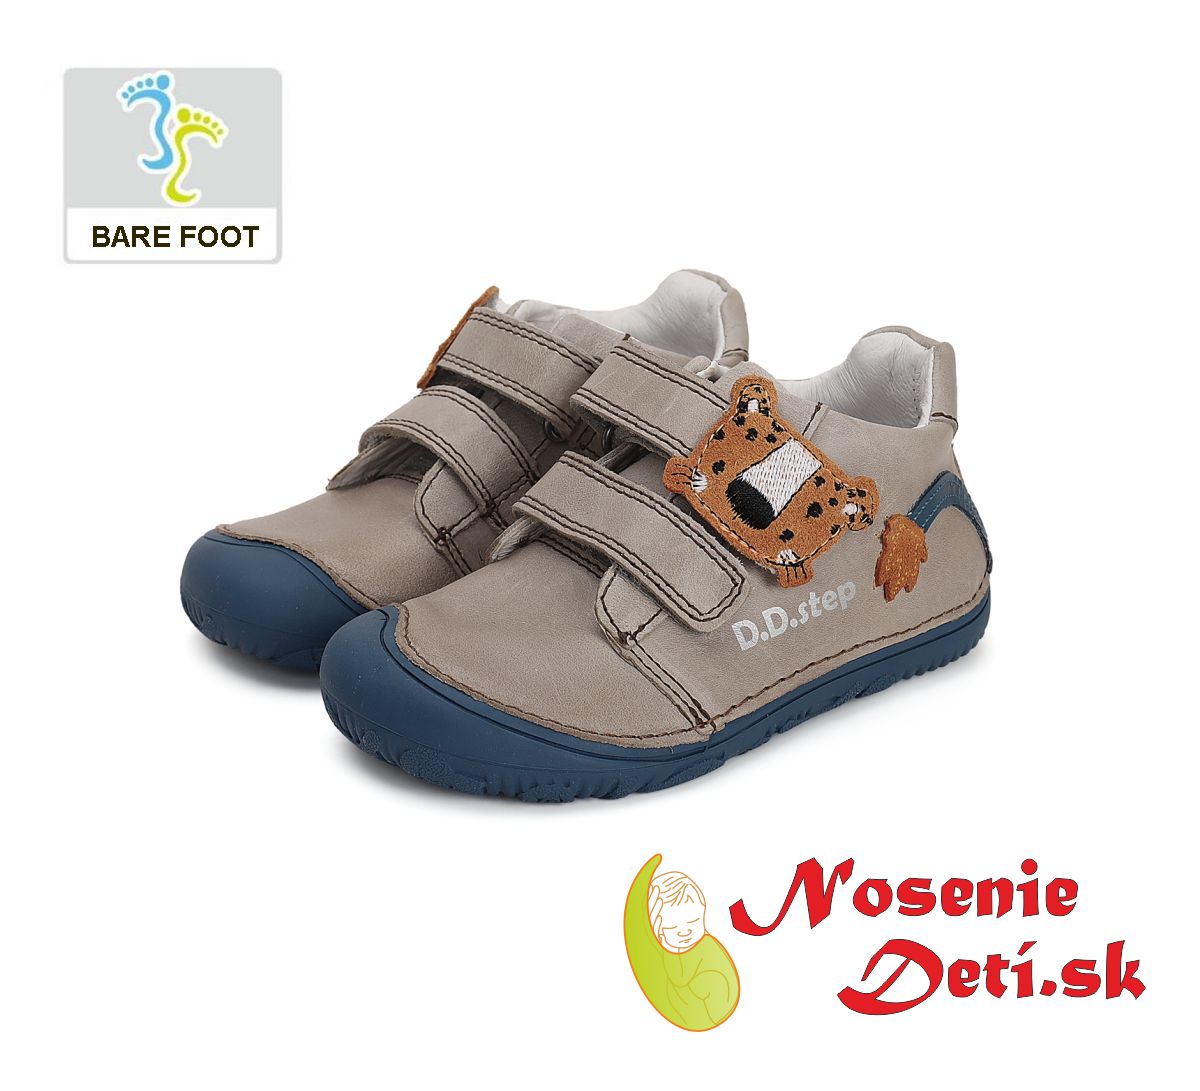 Barefoot chlapčenská prechodná obuv  DD Step topánky Šedé Gepard 073-41369A